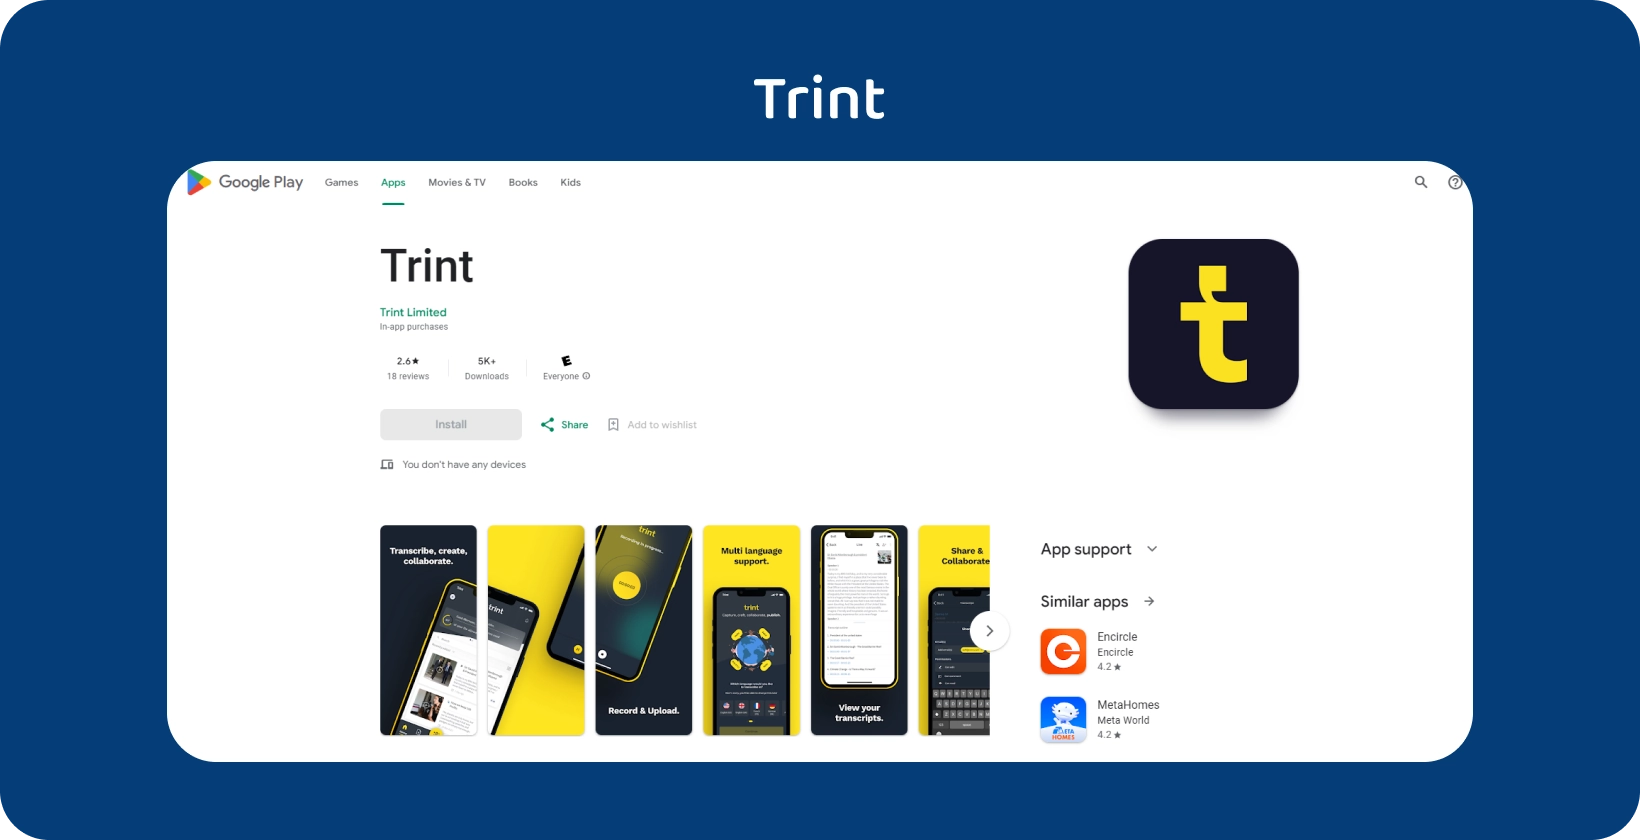 L'app Trint visualizzata su Google Play, evidenziando i suoi servizi di trascrizione con un'interfaccia mobile intuitiva.